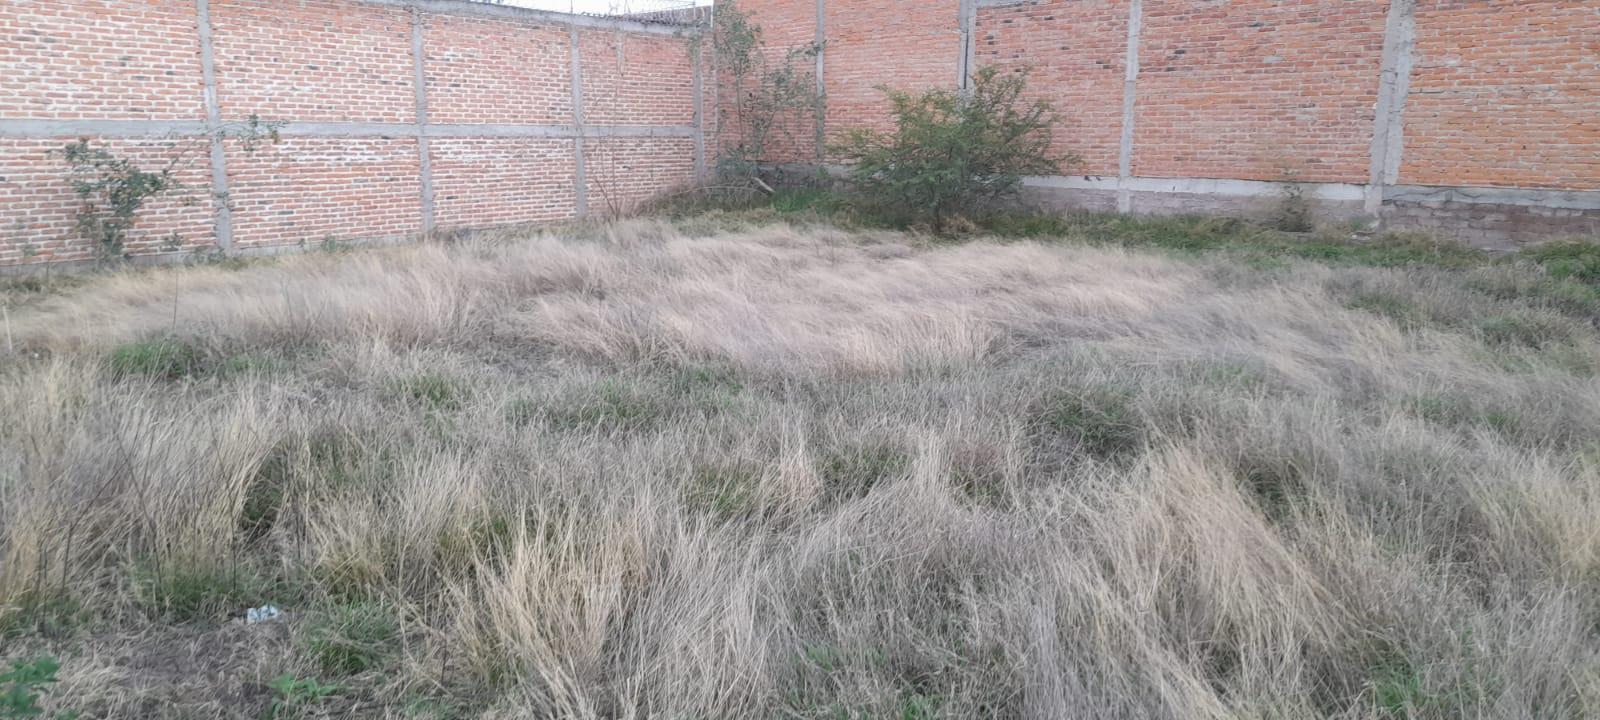 Terreno en Fraccionamiento Puesta del Sol, Aguascalientes.